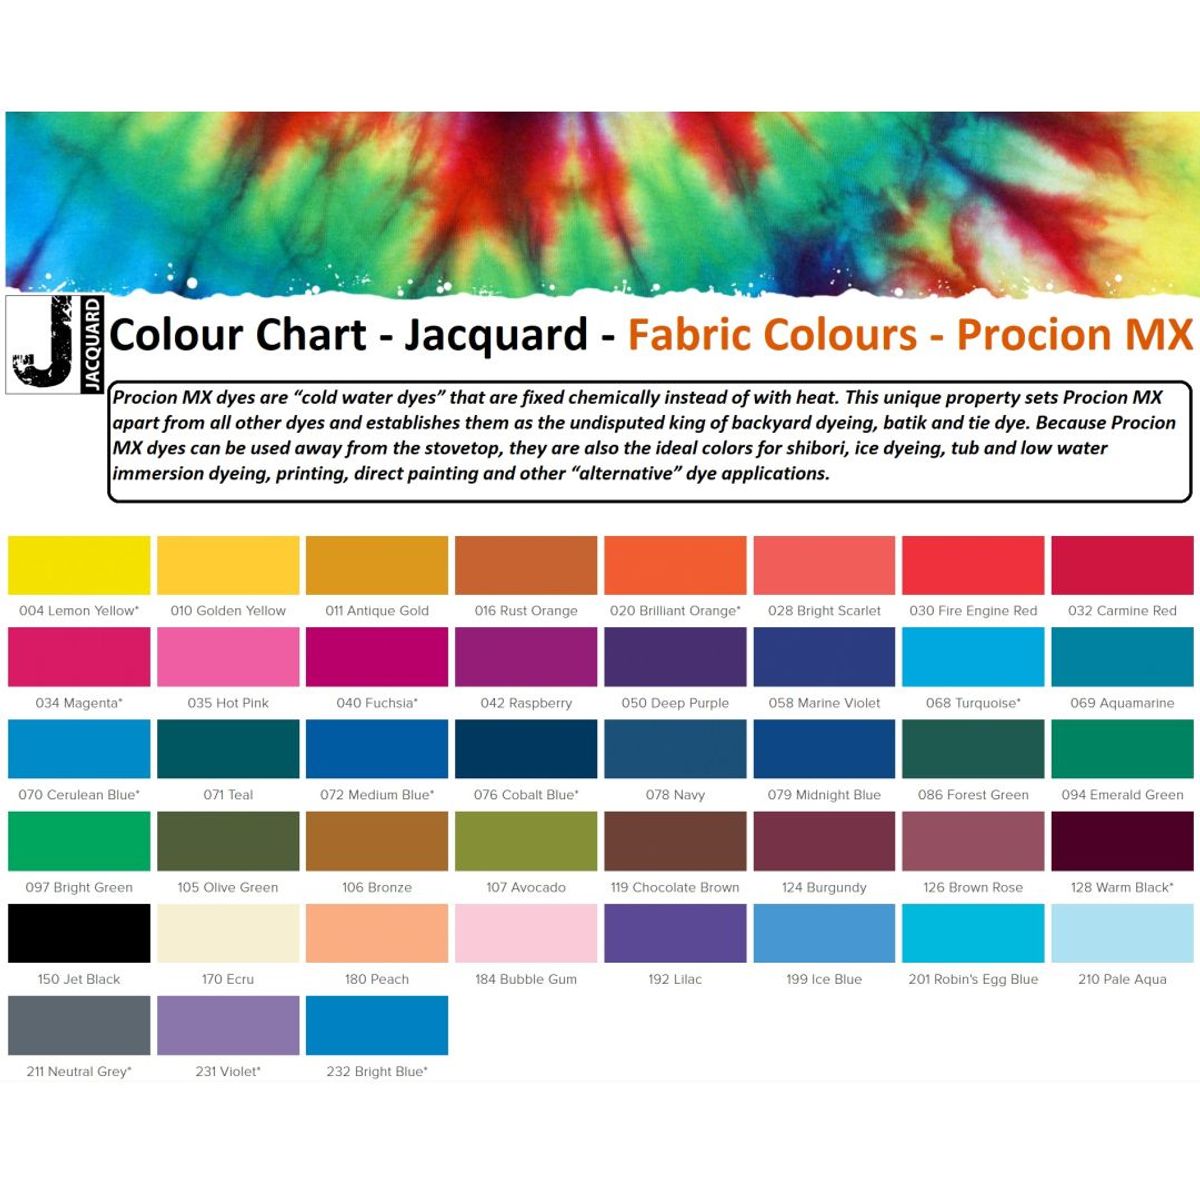 Jacquard - Procion MX Dye - Stoff Textil - Bubble Gum 184